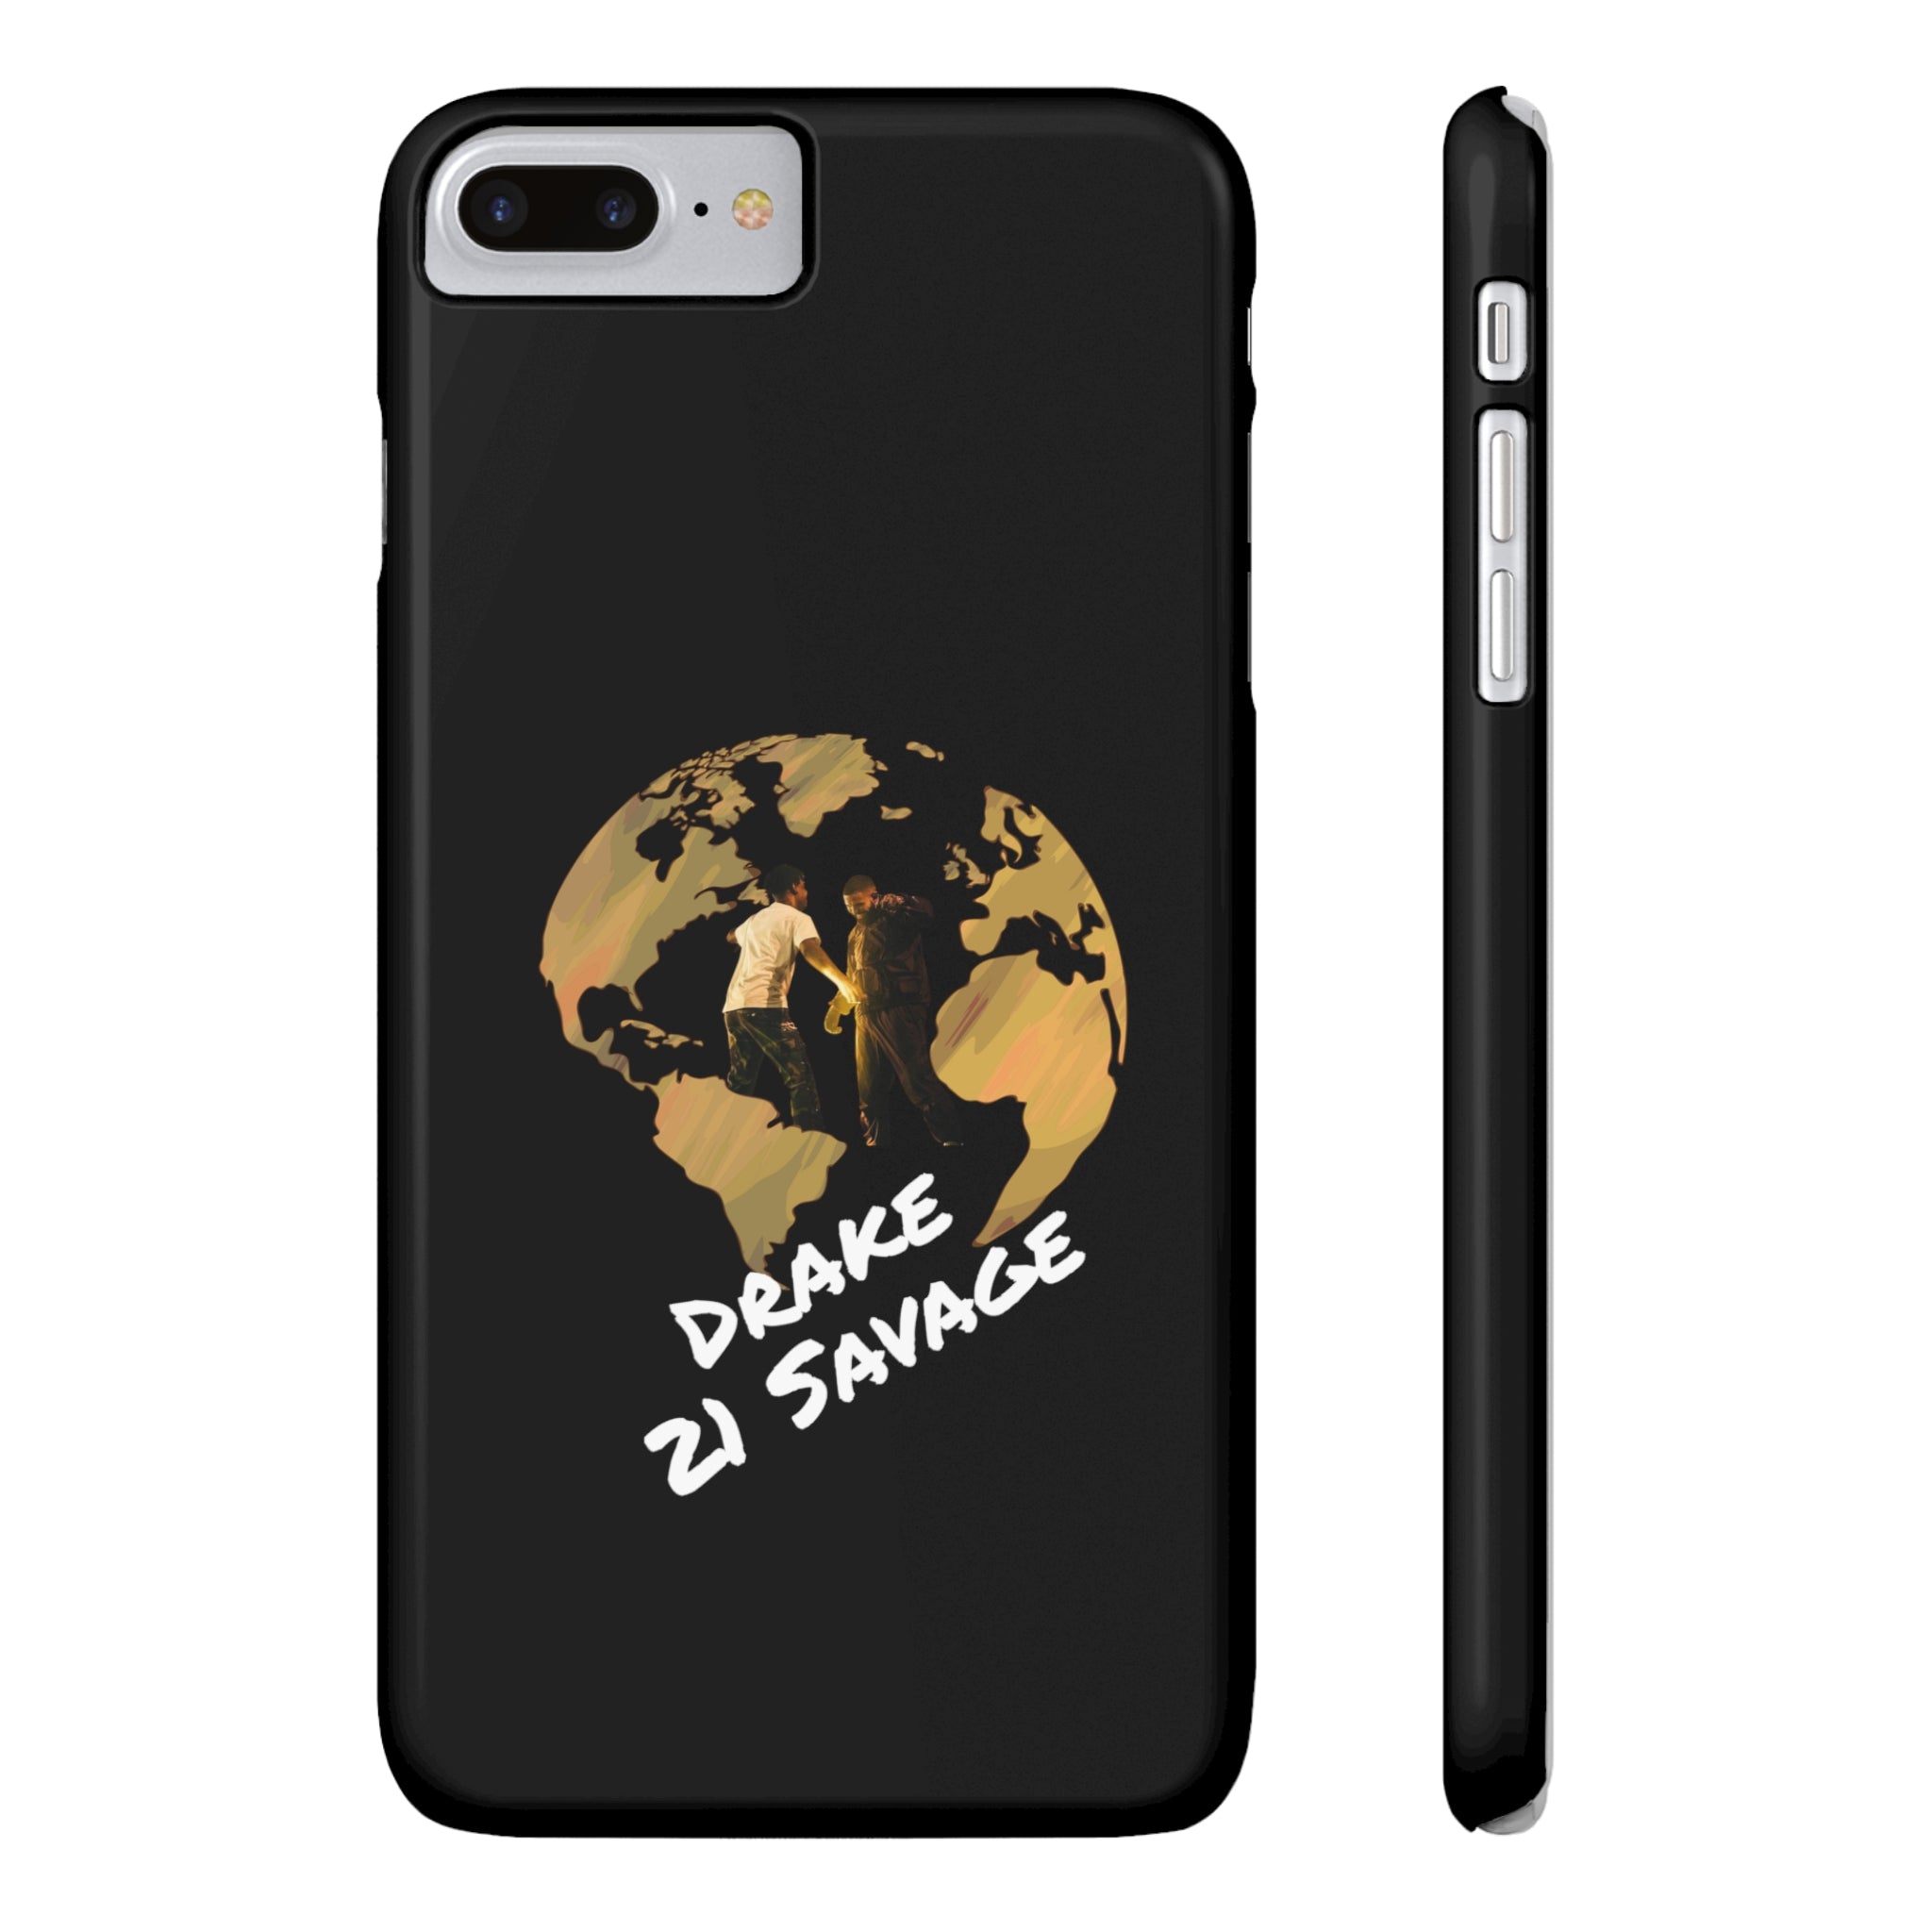 Drake x 21 Savage It's All A Blur Tour Phone Case | Tour Merch